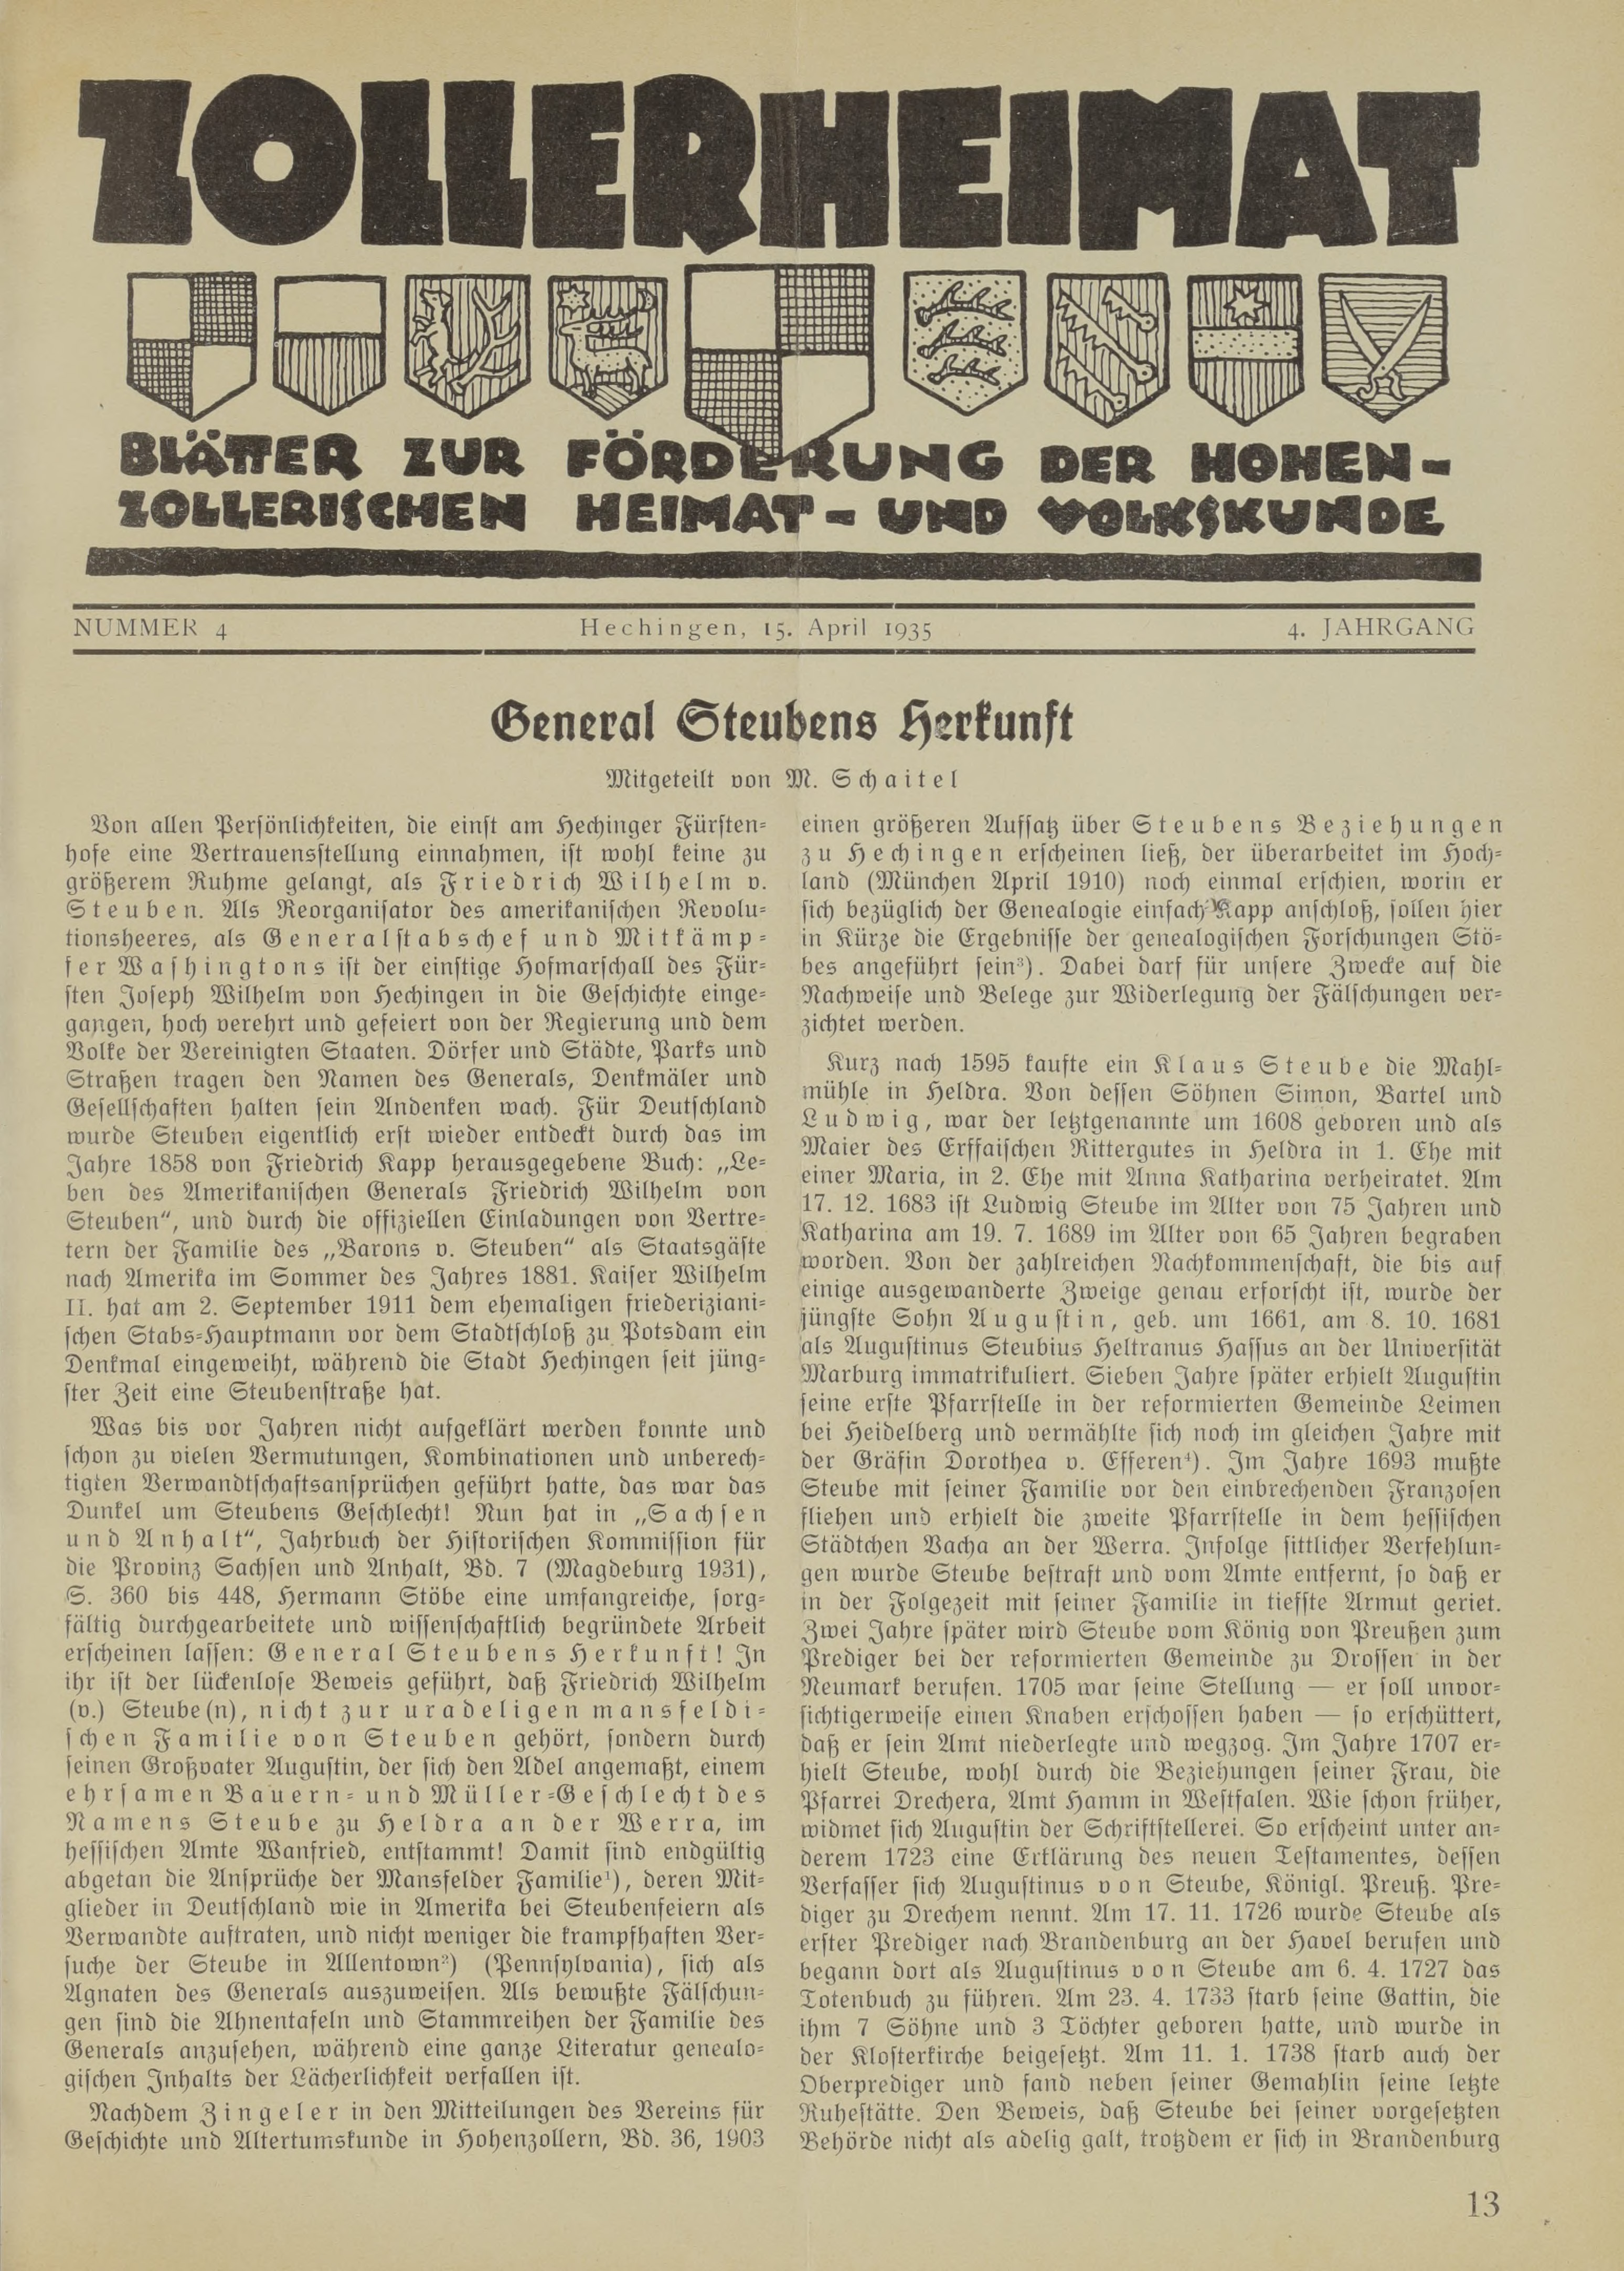                     Ansehen Bd. 4 Nr. 4 (1935): Zollerheimat
                